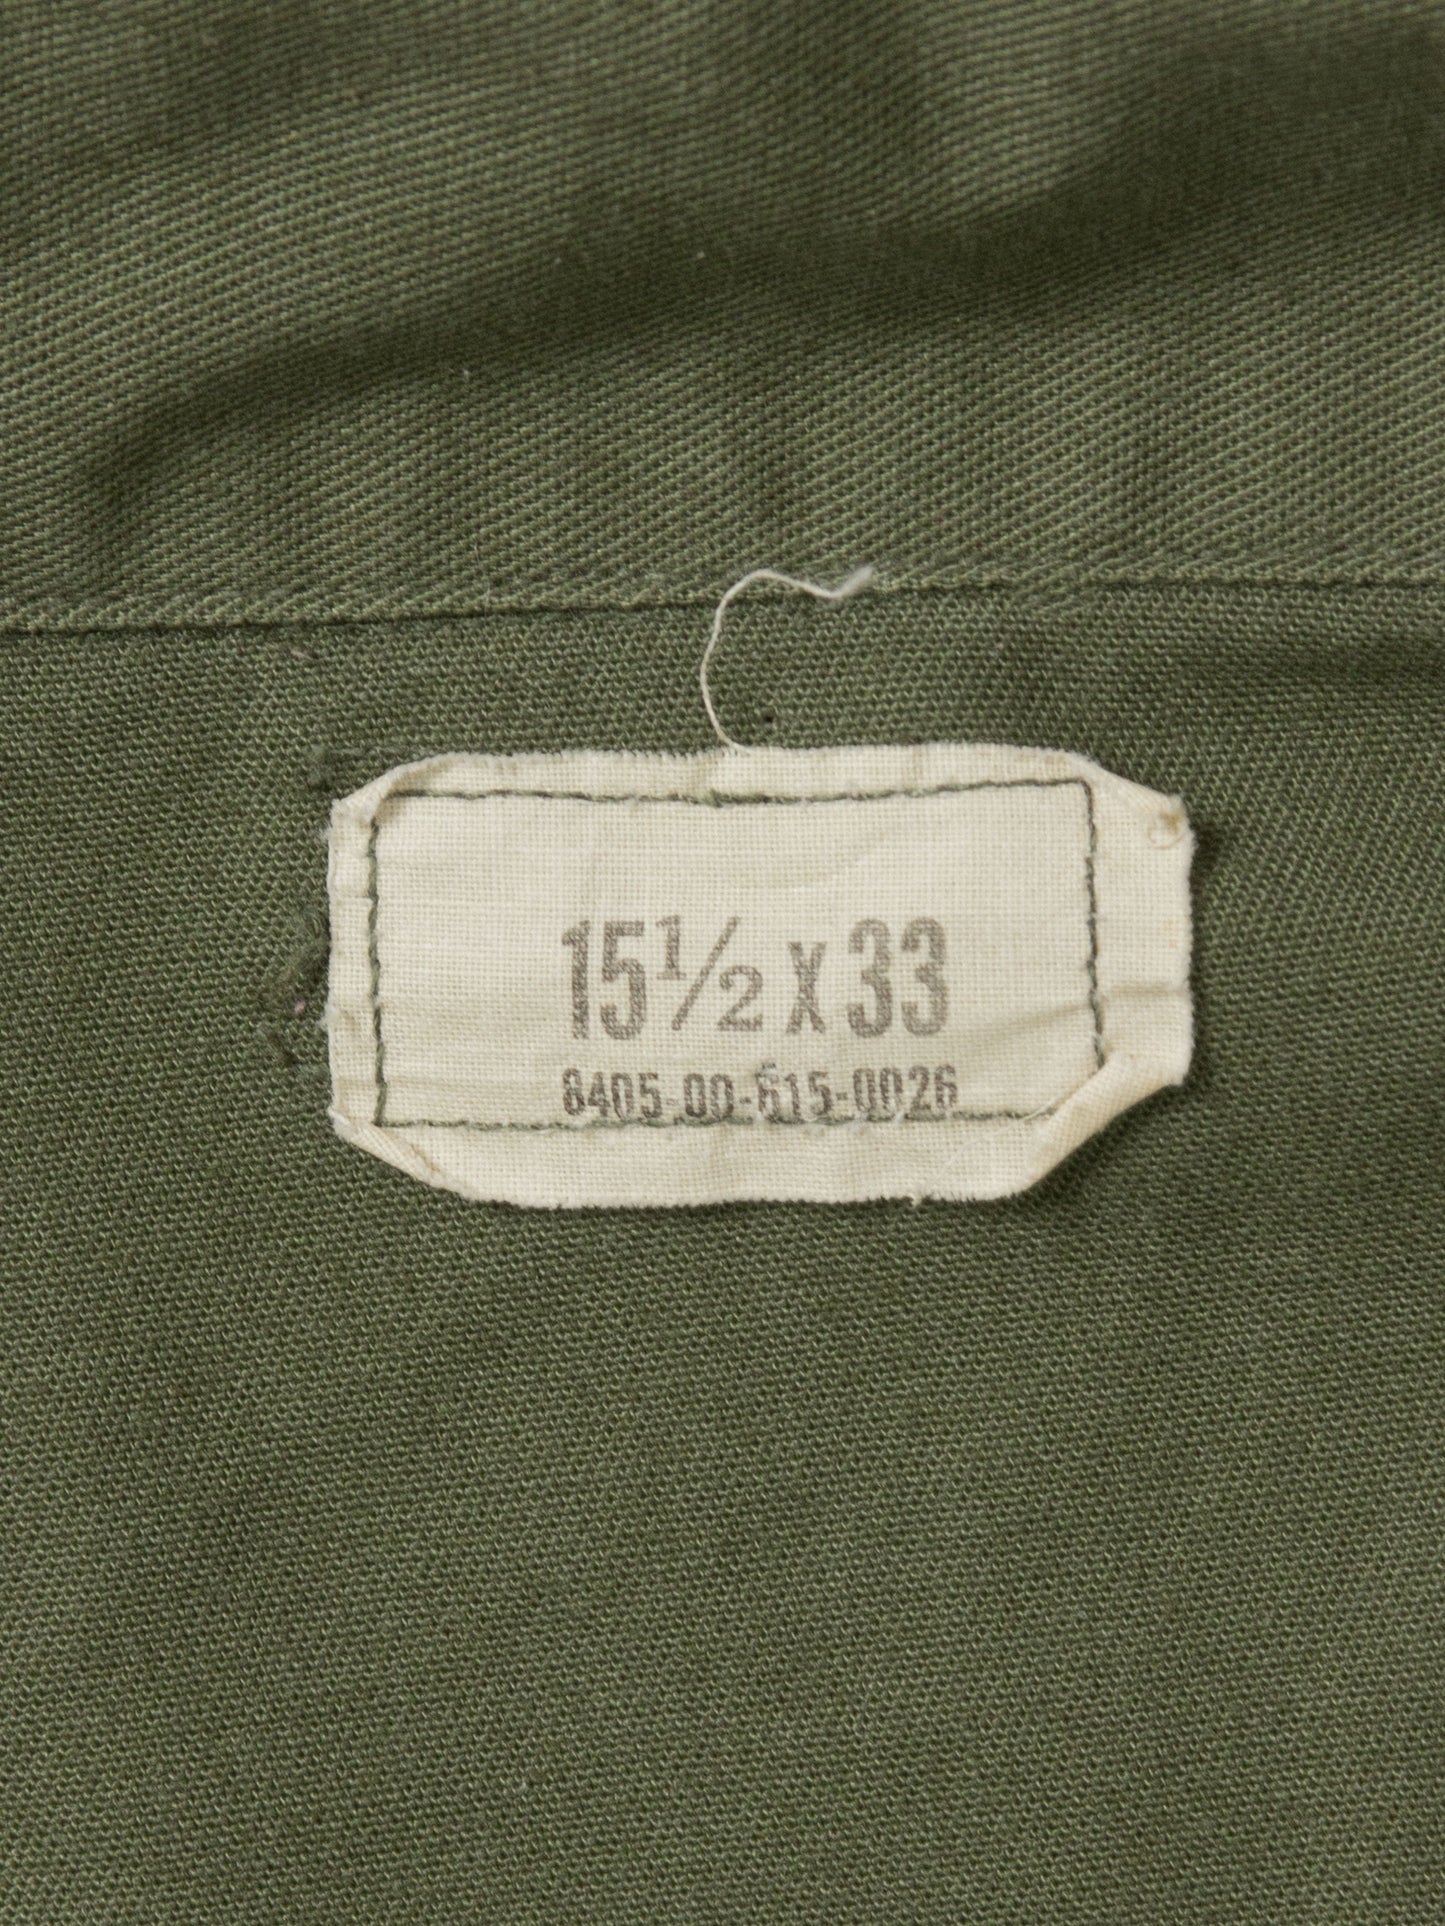 Vtg 1980s US Army OG-507 Fatigue Shirt (M) – Broadway & Sons